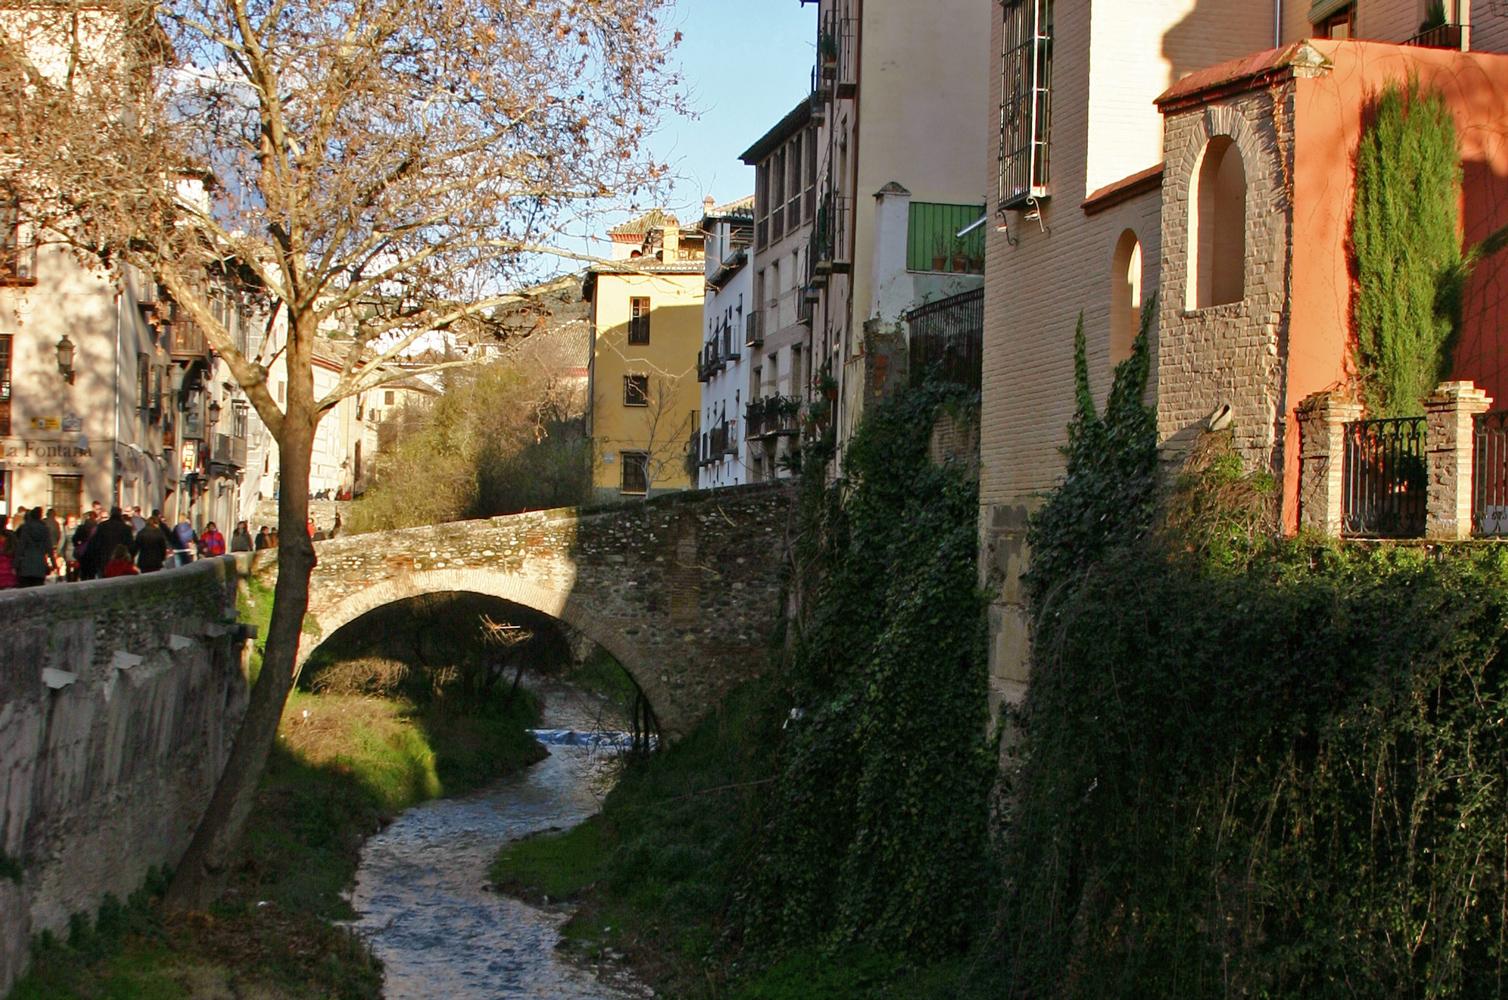 La calle del Darro es una de las vías más antiguas de Granada, y también una de las más concurridas y atractivas, desde donde se puede ver la Alhambra y pasear al lado del río Darro